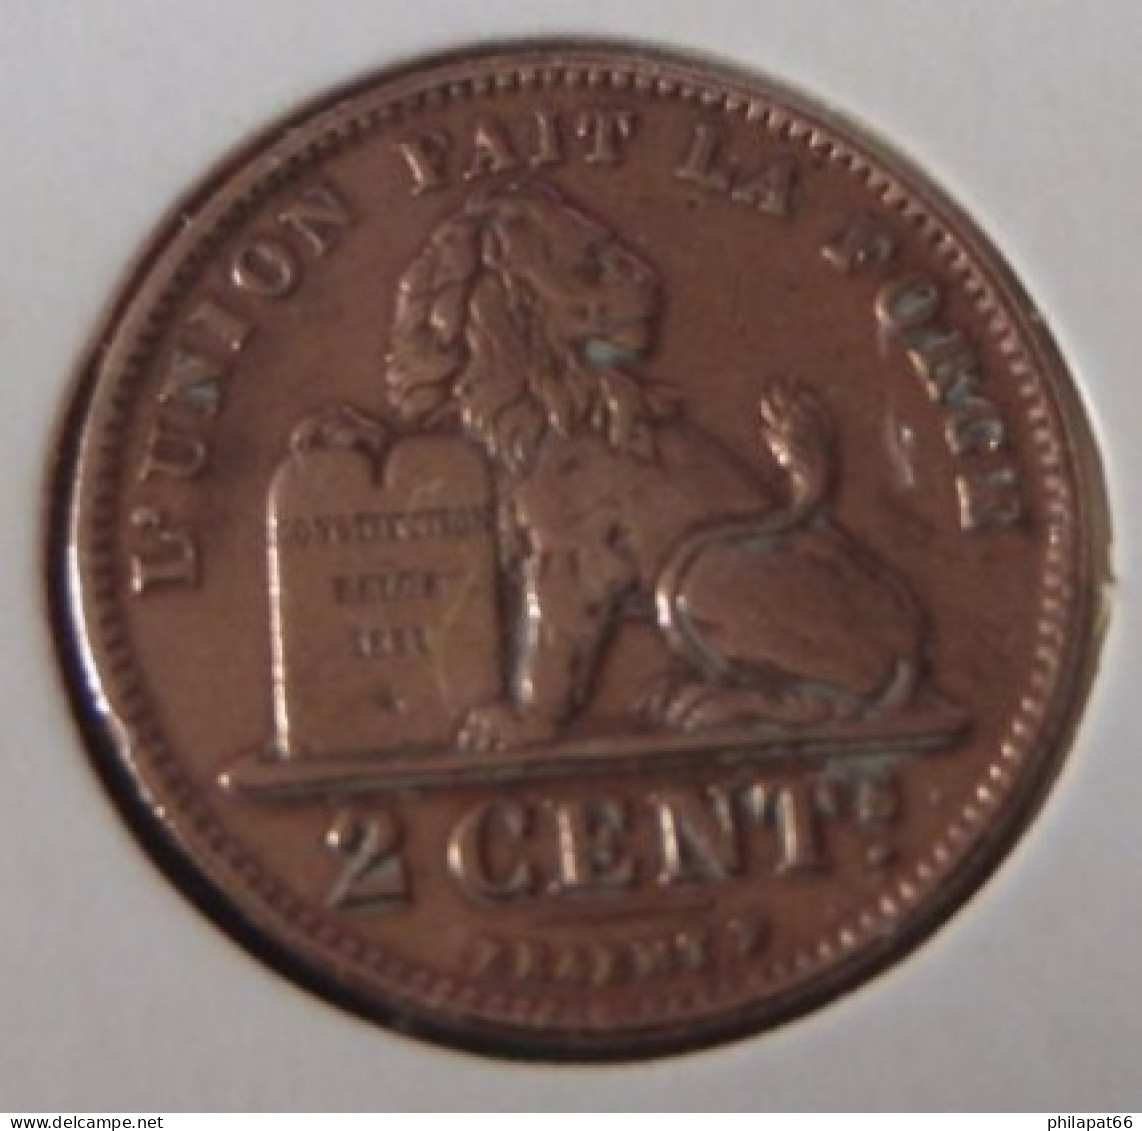 Albert I 2 Cent Belgische Leeuw 1912FR - 2 Cent